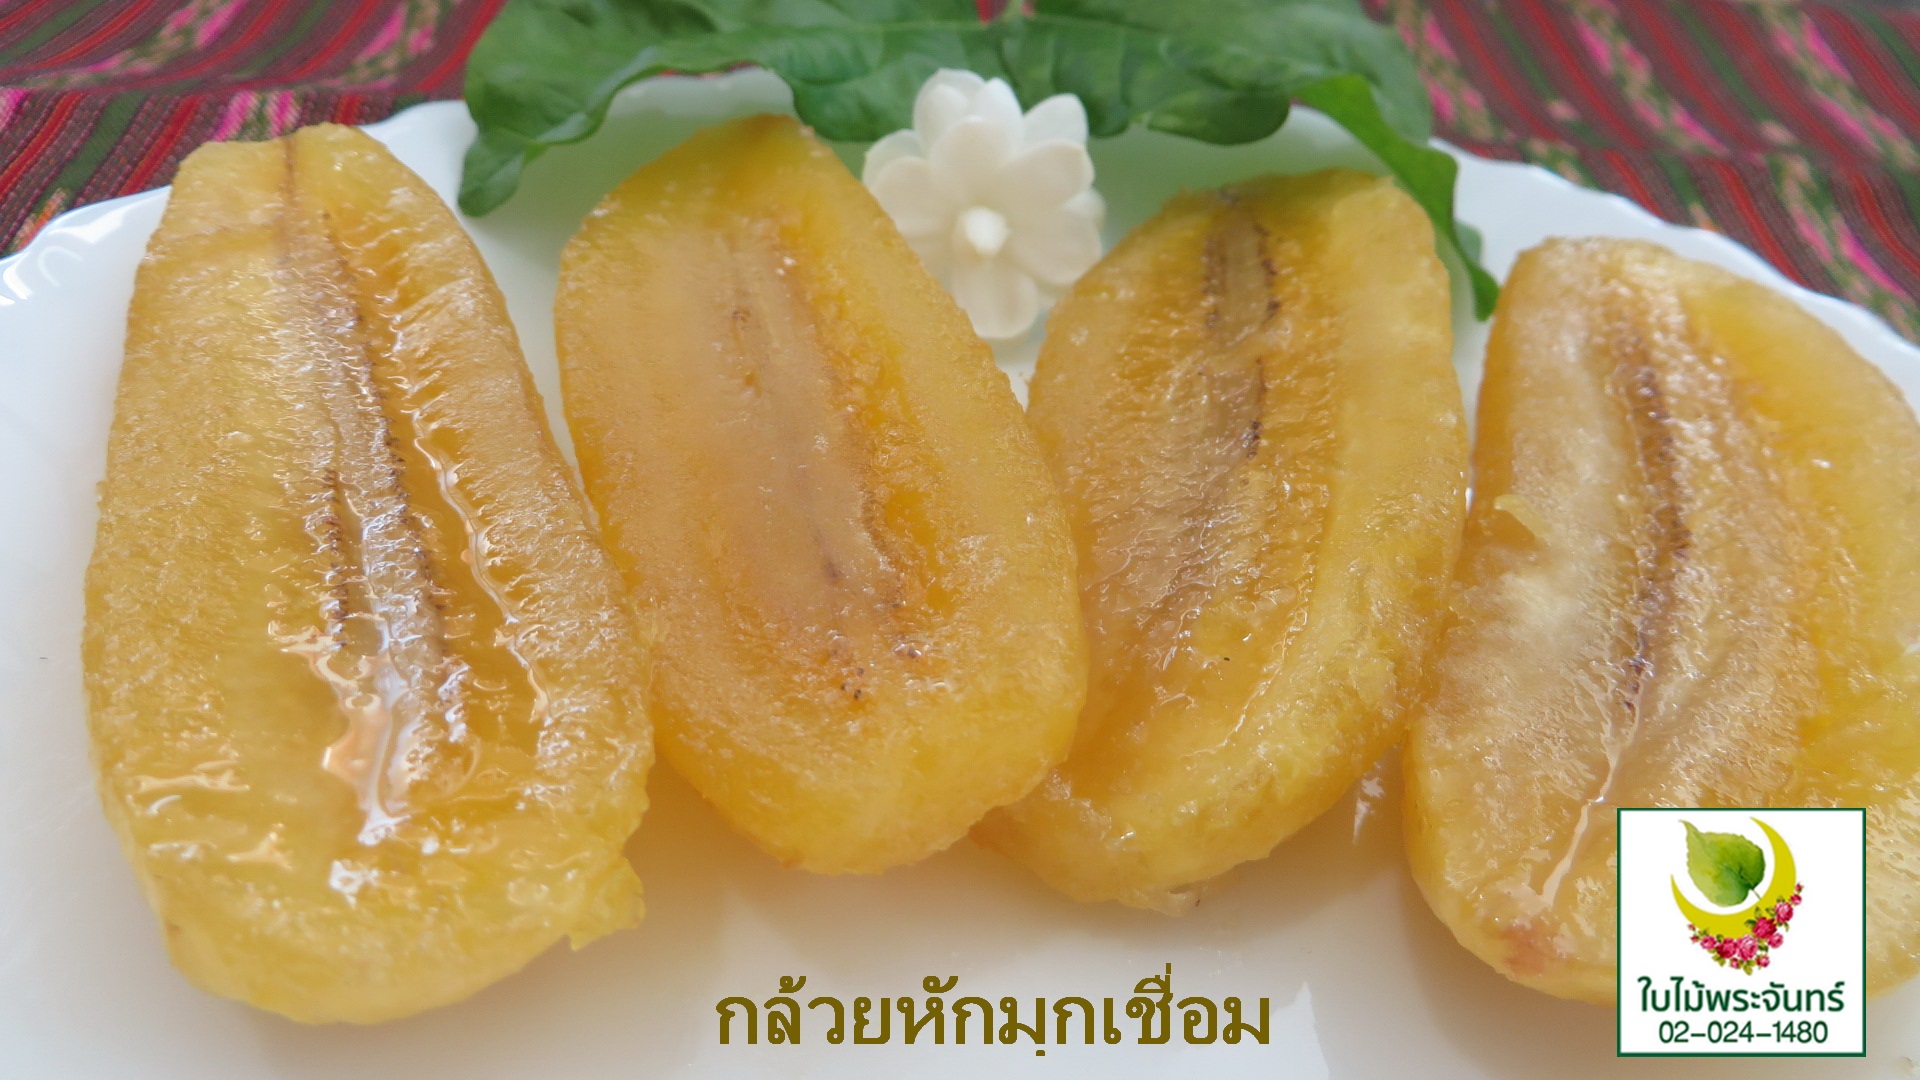 กล้วยหักมุกเชื่อม ขนมไทย ใบไม้พระจันทร์